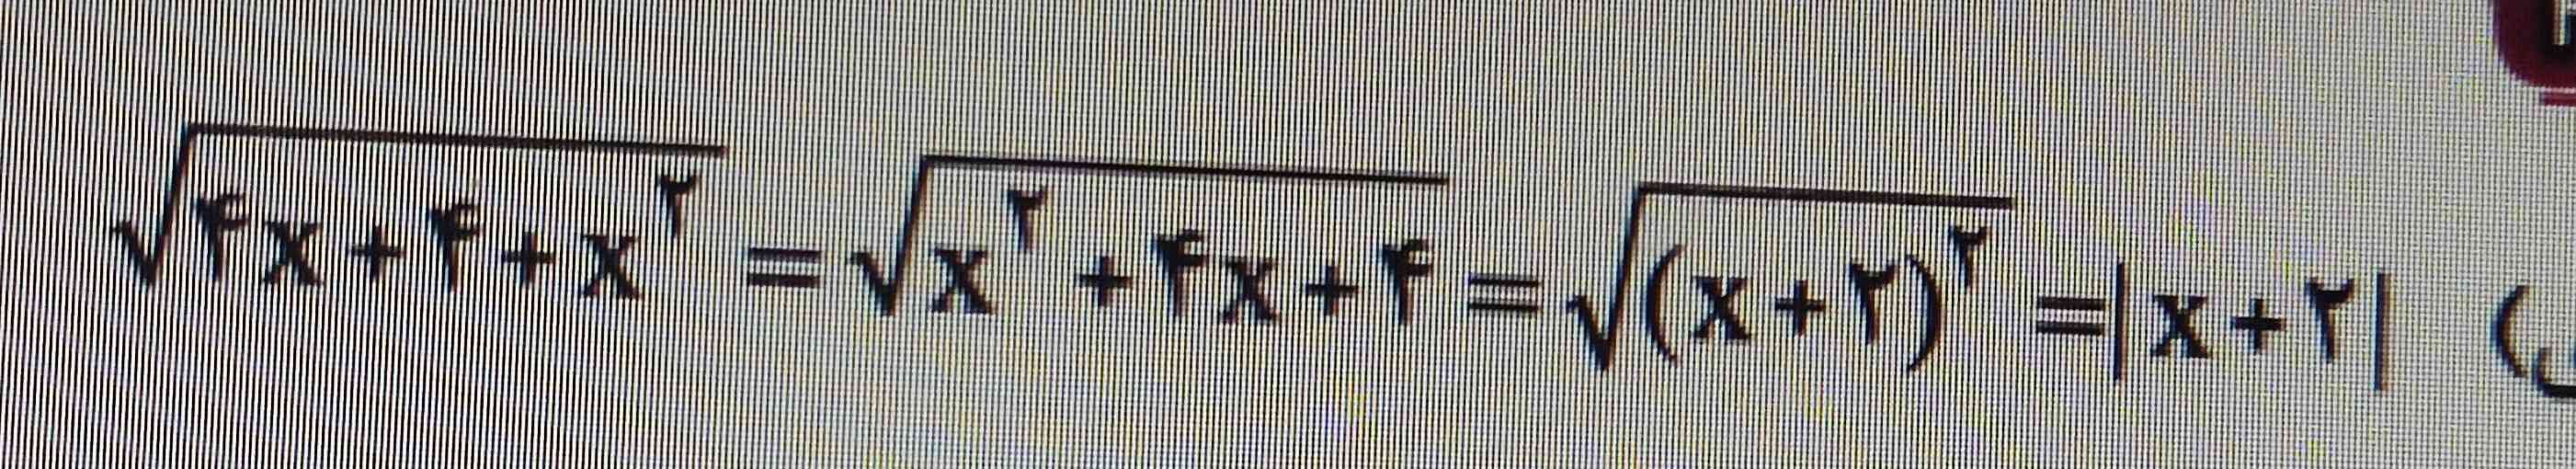 چرا x+2 رفت تو قدرمطلق؟